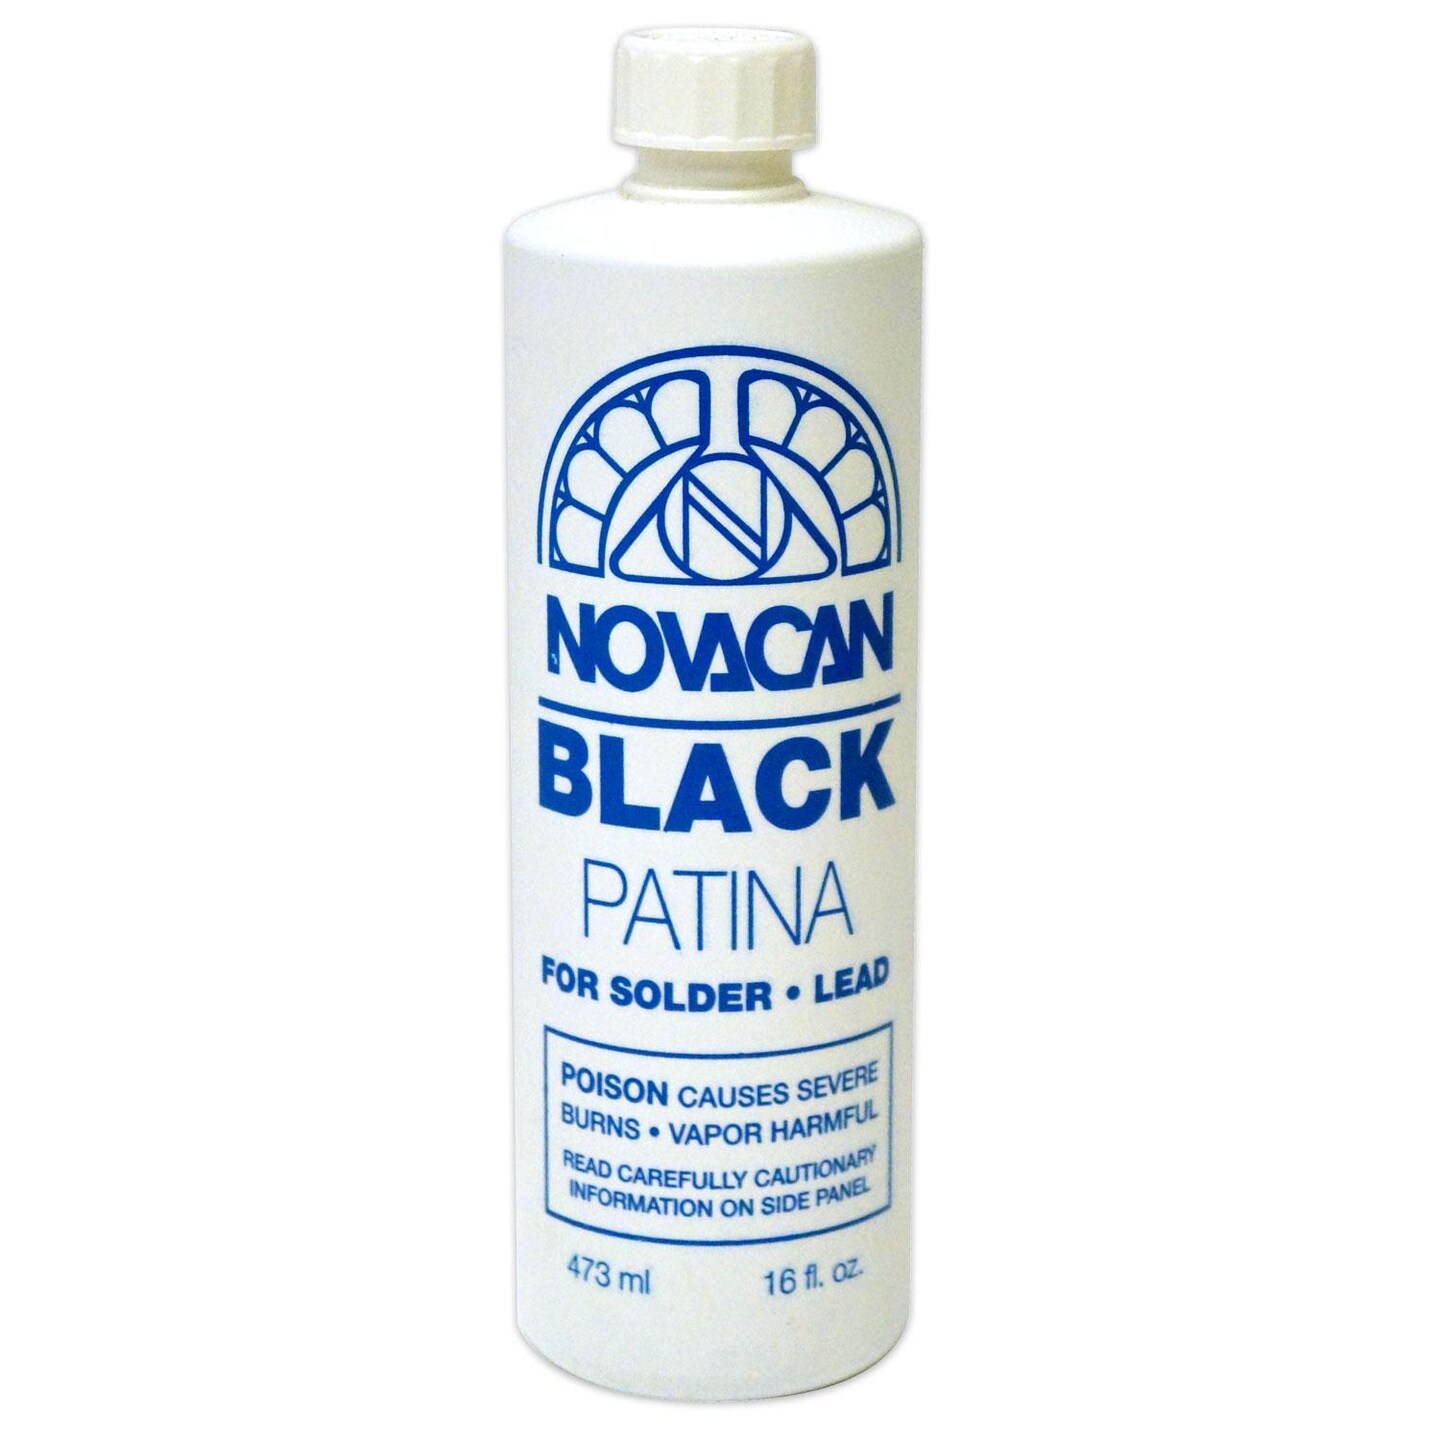 Black Patina For Lead And Solder - 8oz or 16 oz Bottle